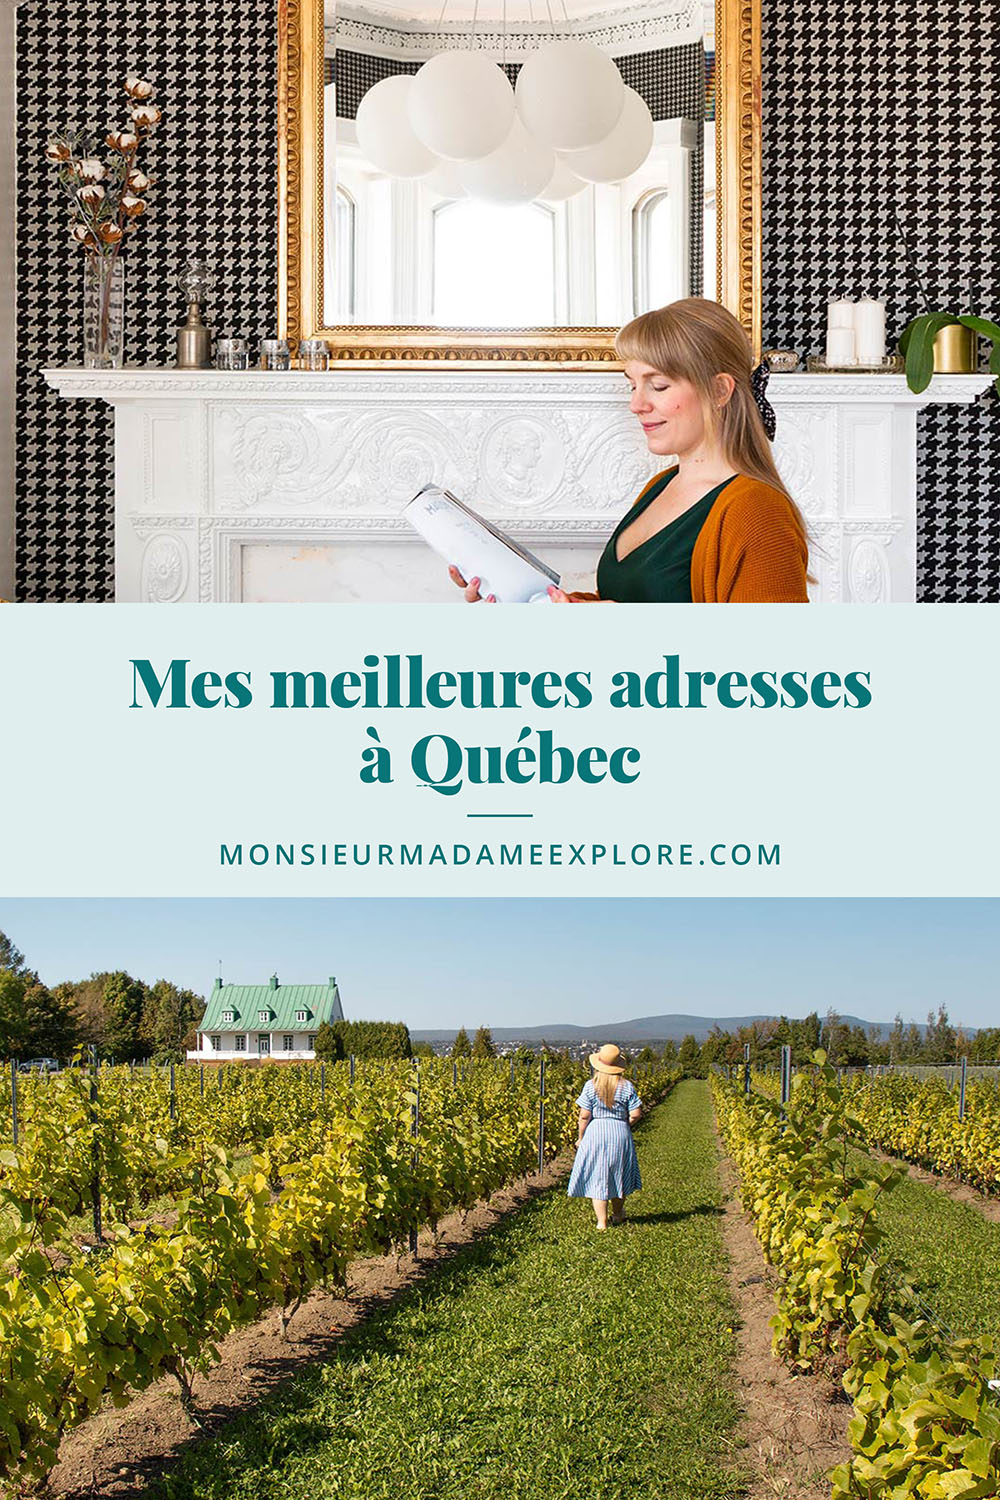 Mes meilleures adresses à Québec, Monsieur+Madame Explore, Blogue de voyage, Canada / My best spots in Quebec City, Canada